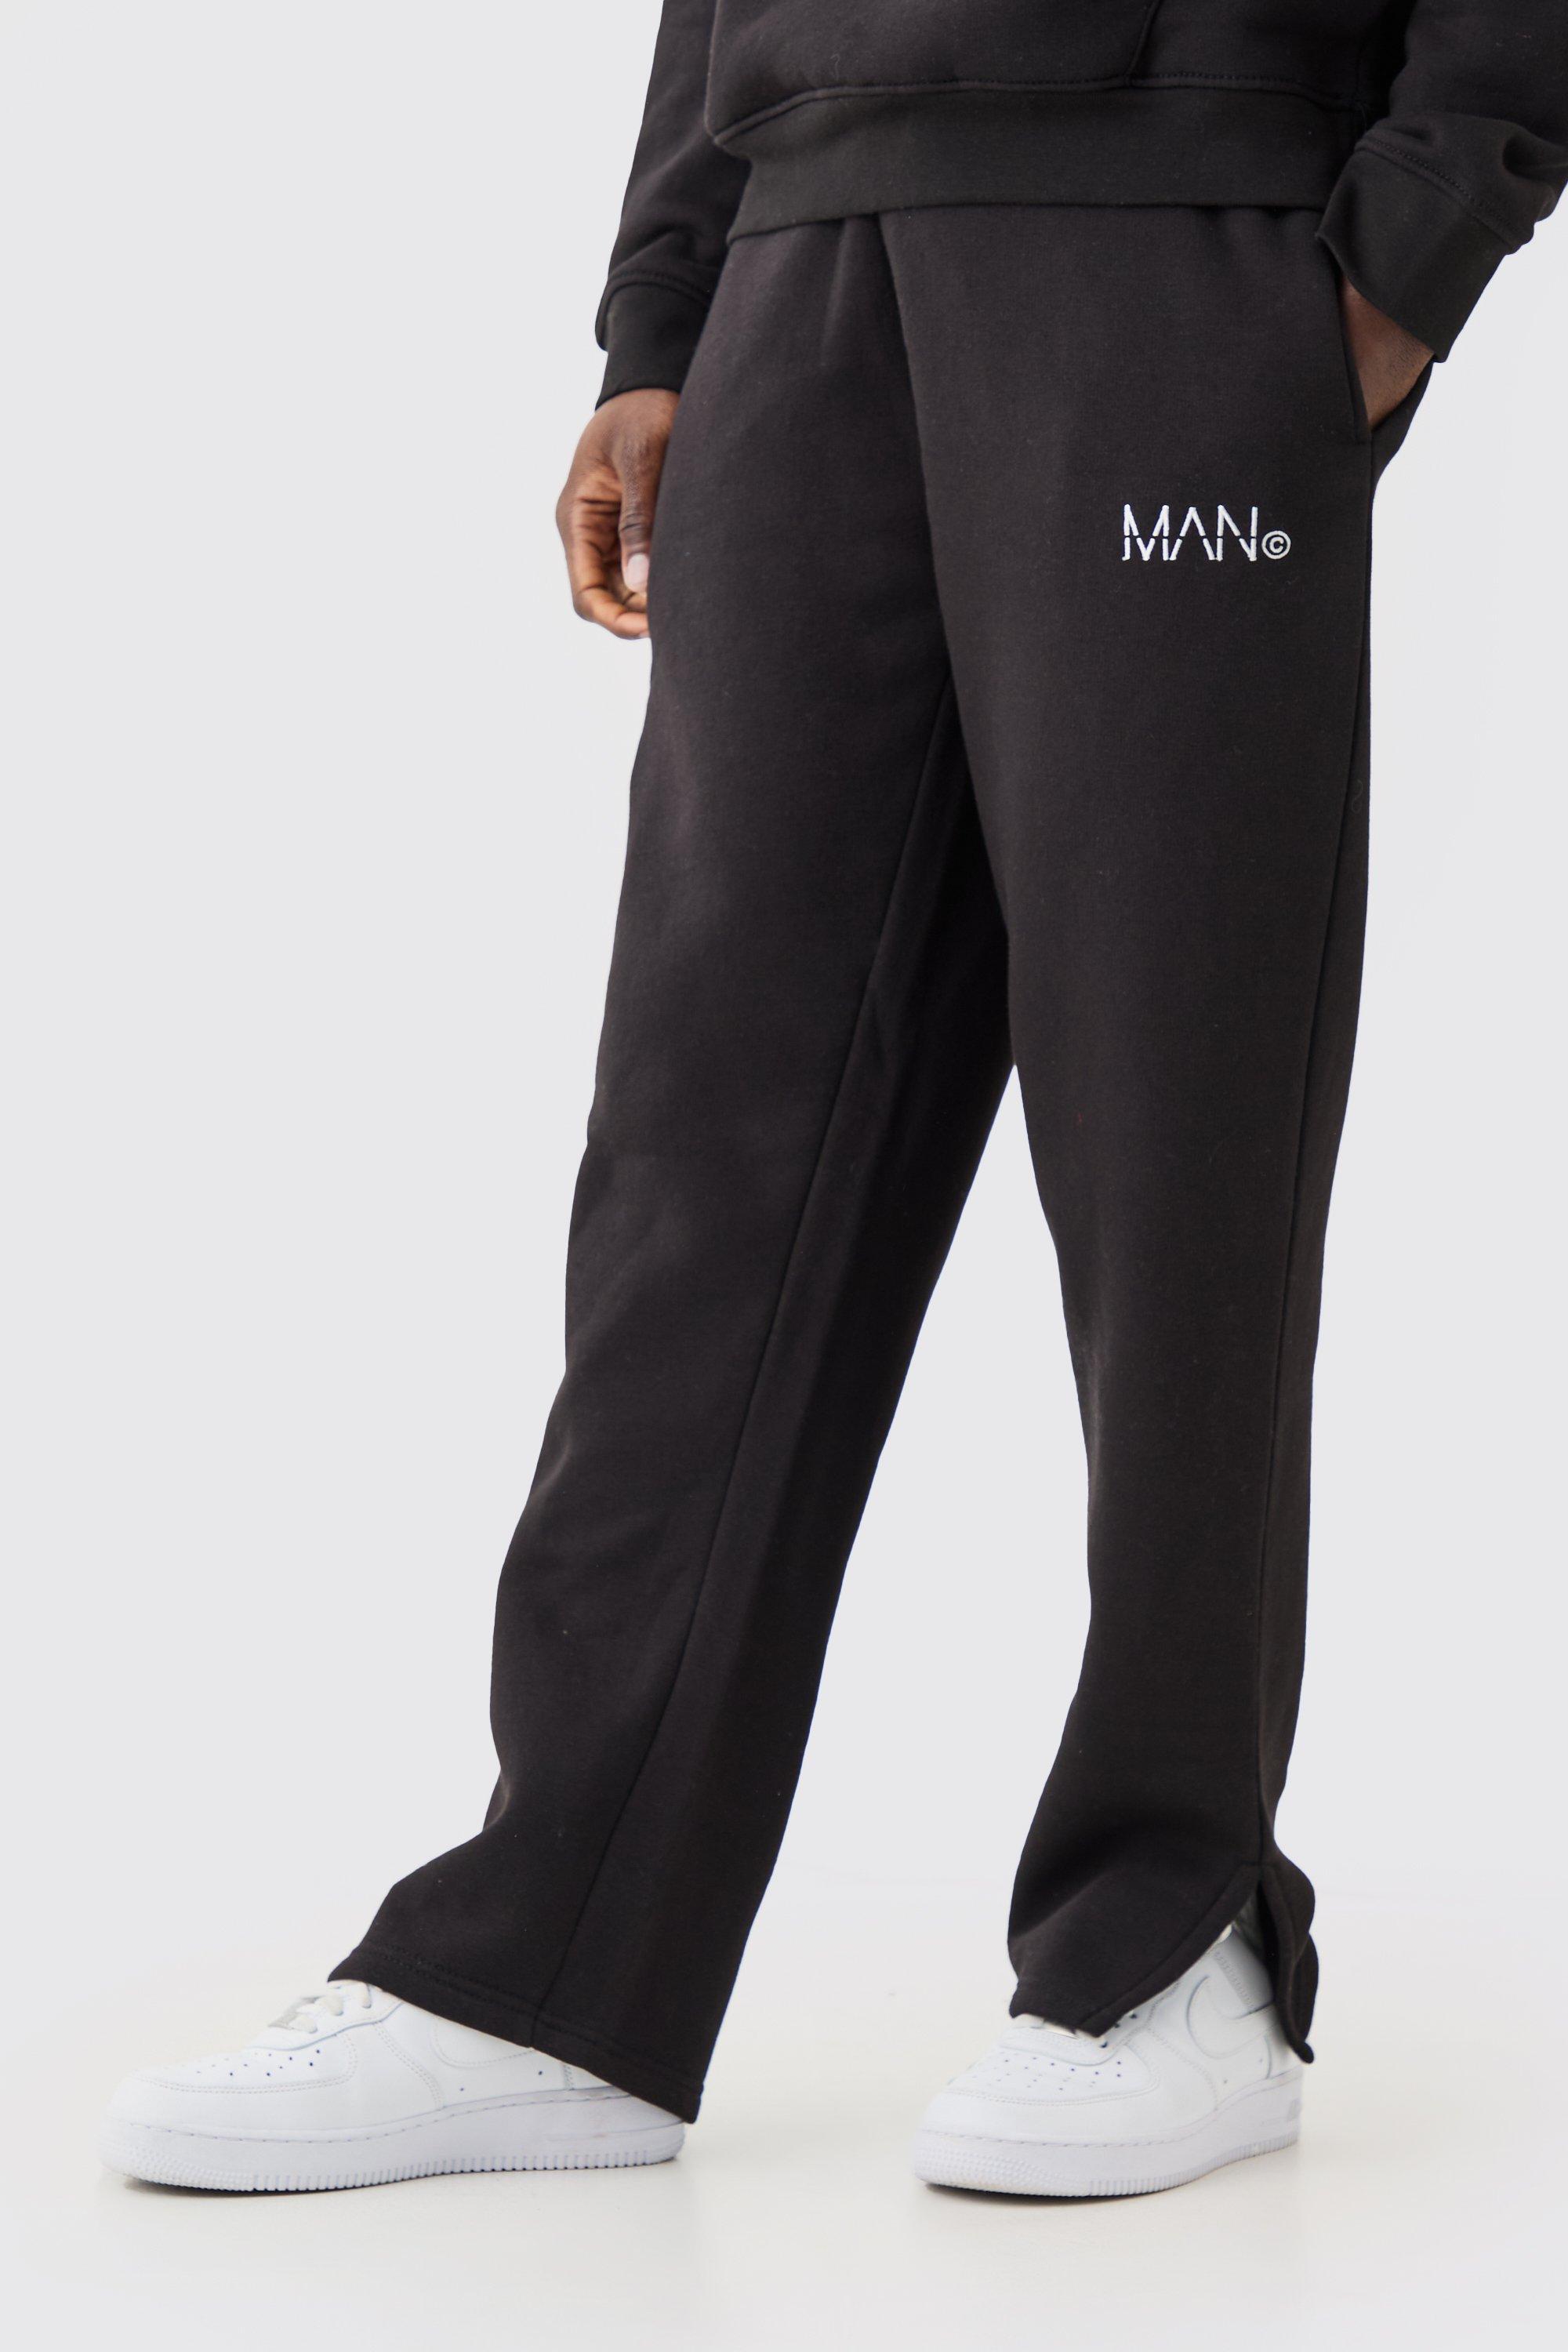 Image of Pantaloni tuta Man con spacco sul fondo, Nero